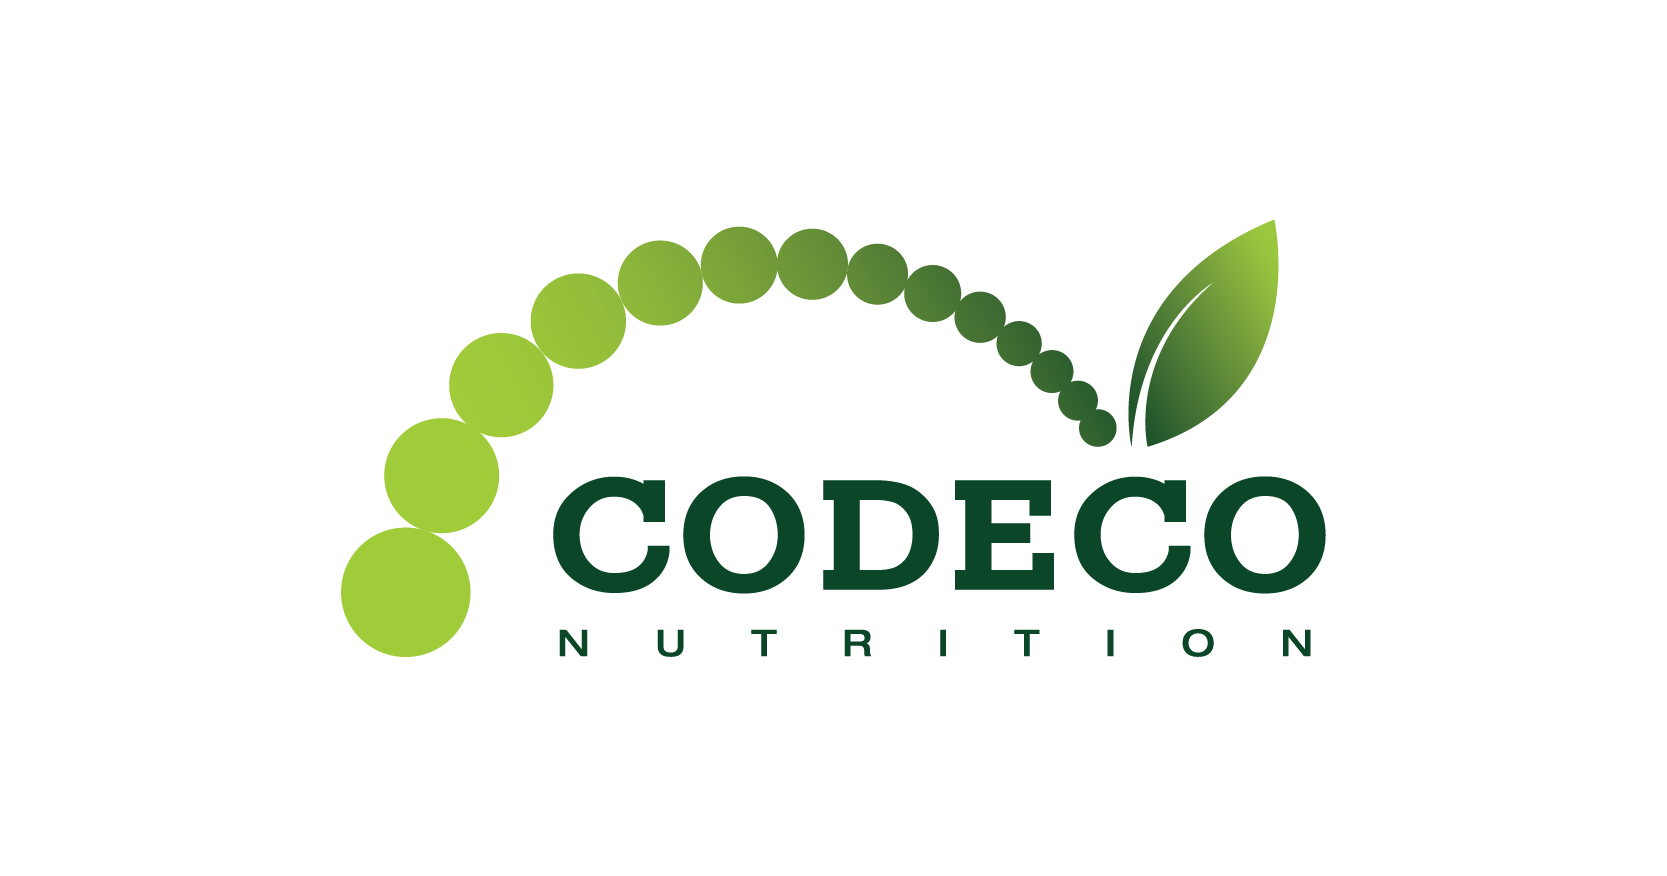 CODECO NUTRITION 코데코 뉴트리션 | 647-999-9292 - CBM 토론토